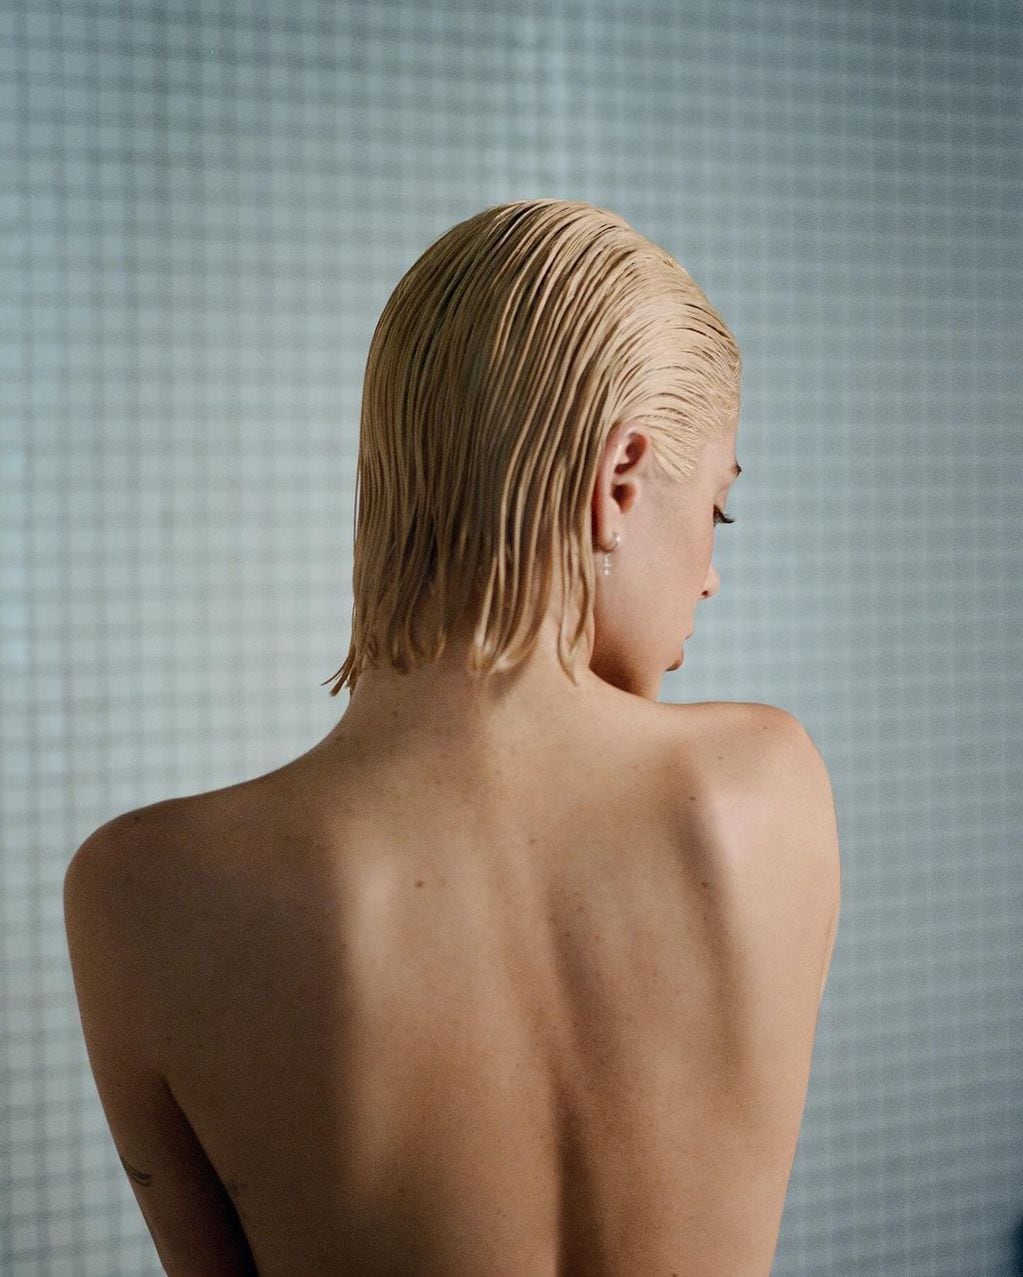 Tini Stoessel lanzará el álbum más íntimo de su carrera, "Un mechón de pelo"